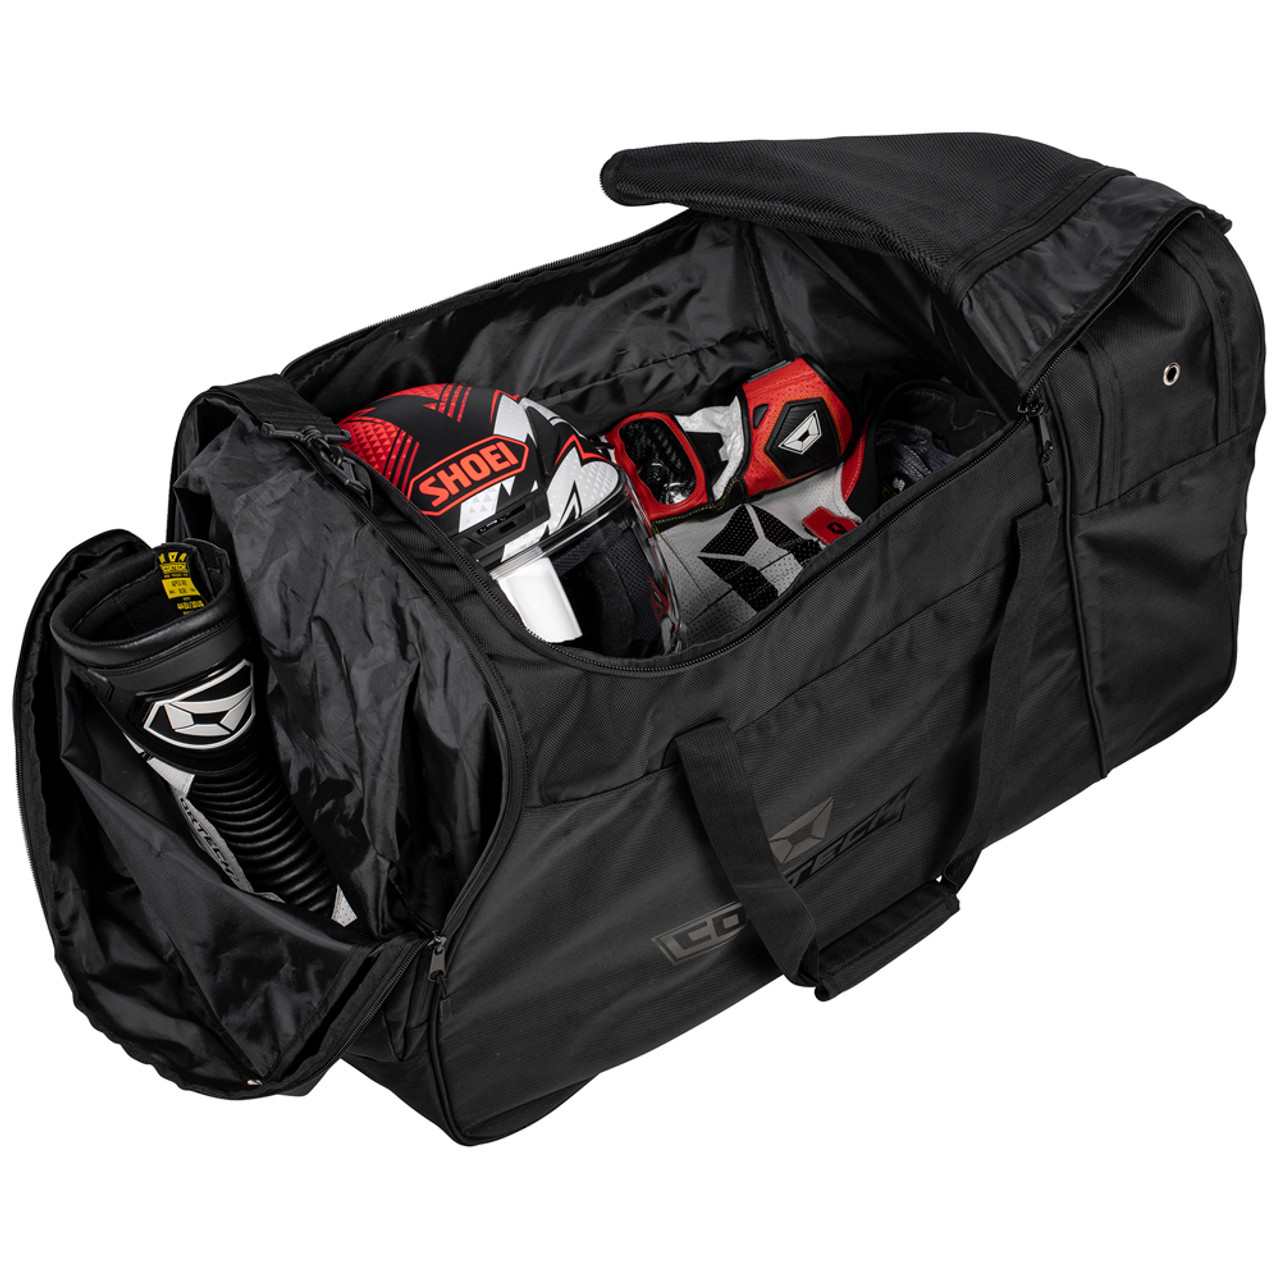 Cortech Tracker Roller Gear Bag - Sportbike Track Gear